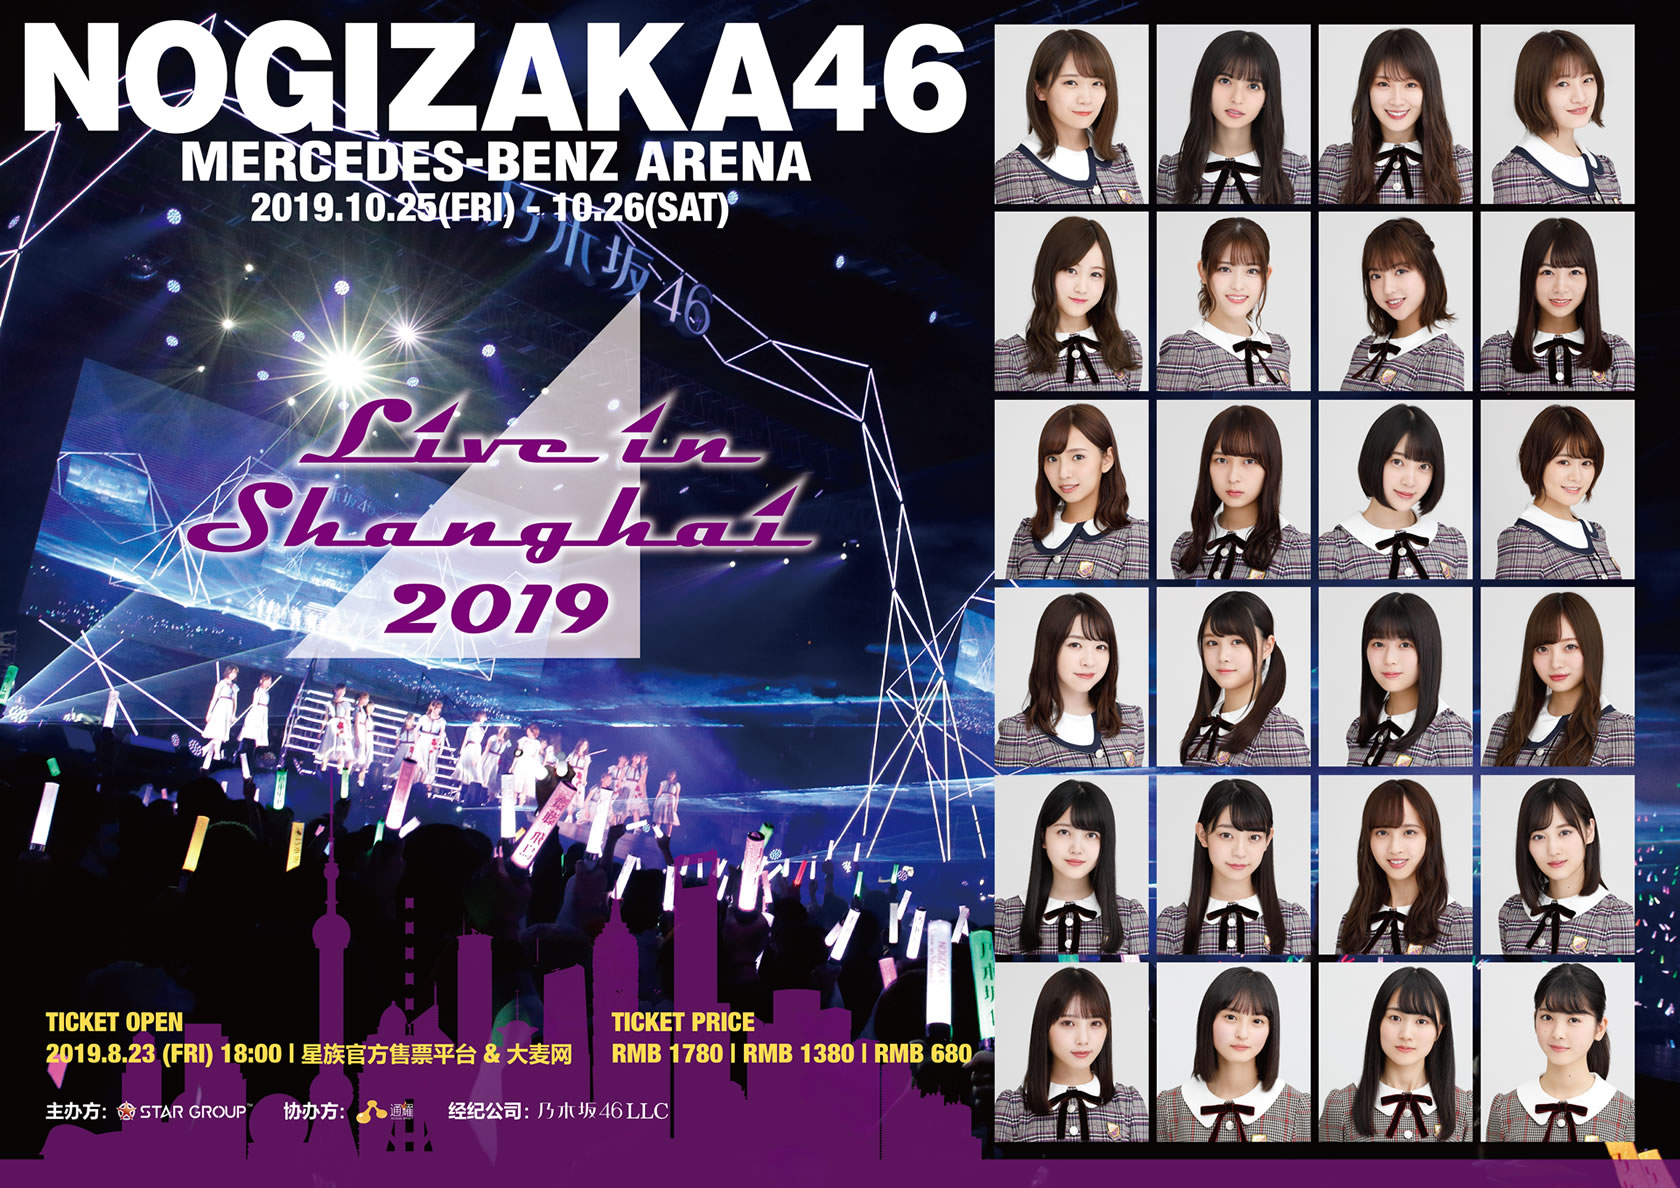 乃木坂46ライブ In 上海 19 Nogizaka46 Live In Shanghai 19